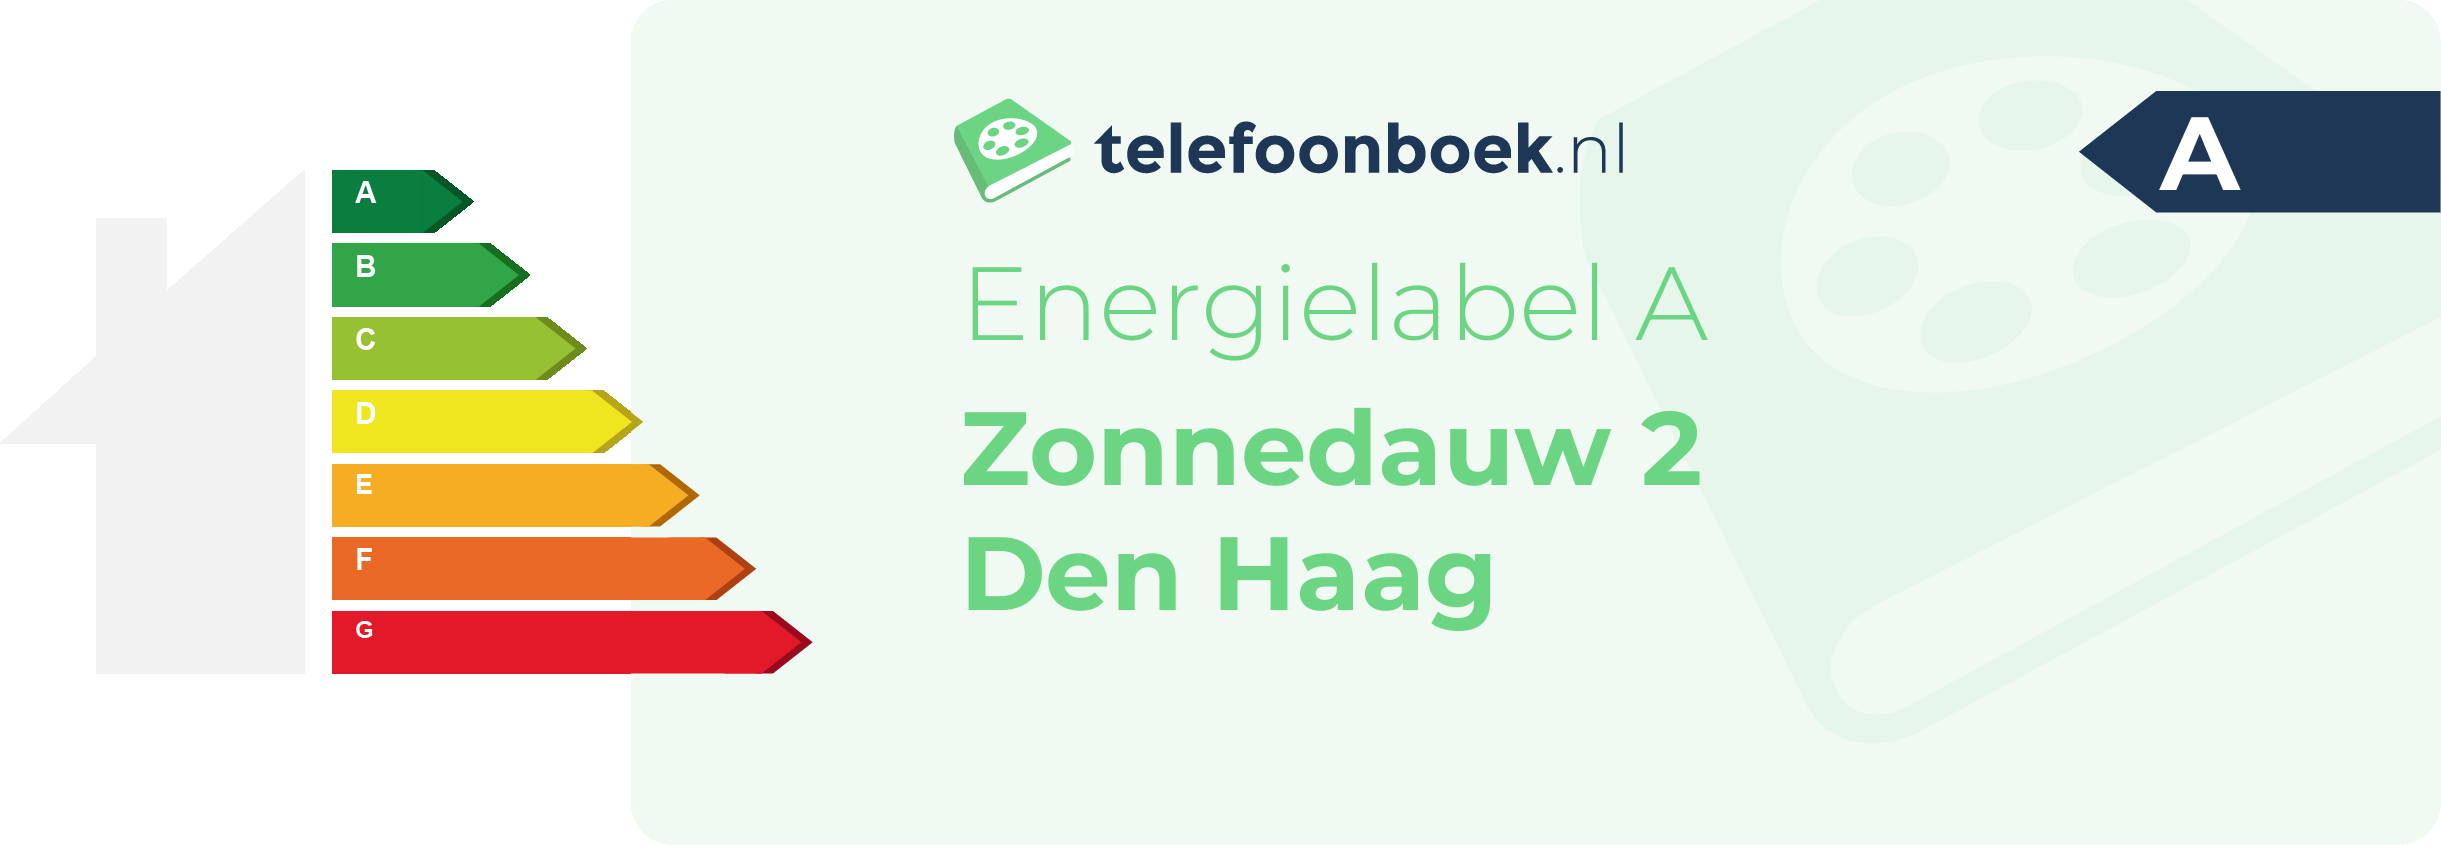 Energielabel Zonnedauw 2 Den Haag